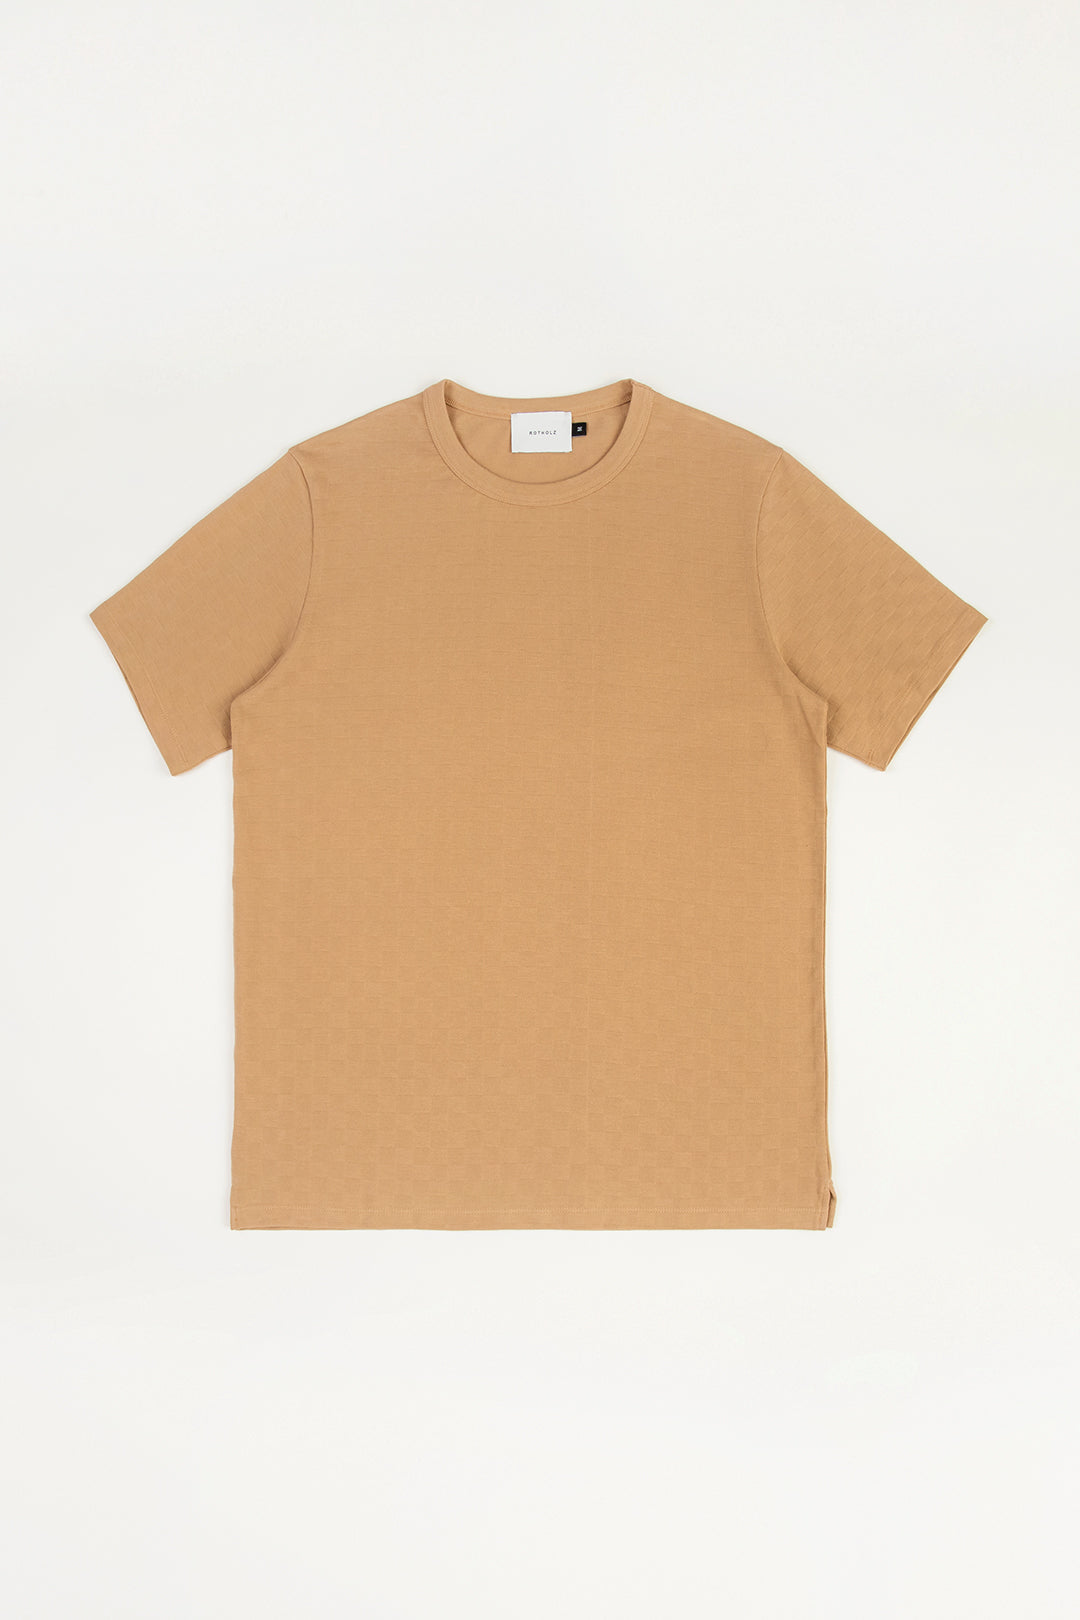 Karamellfarbenes T-Shirt aus 100% Bio-Baumwolle von Rotholz